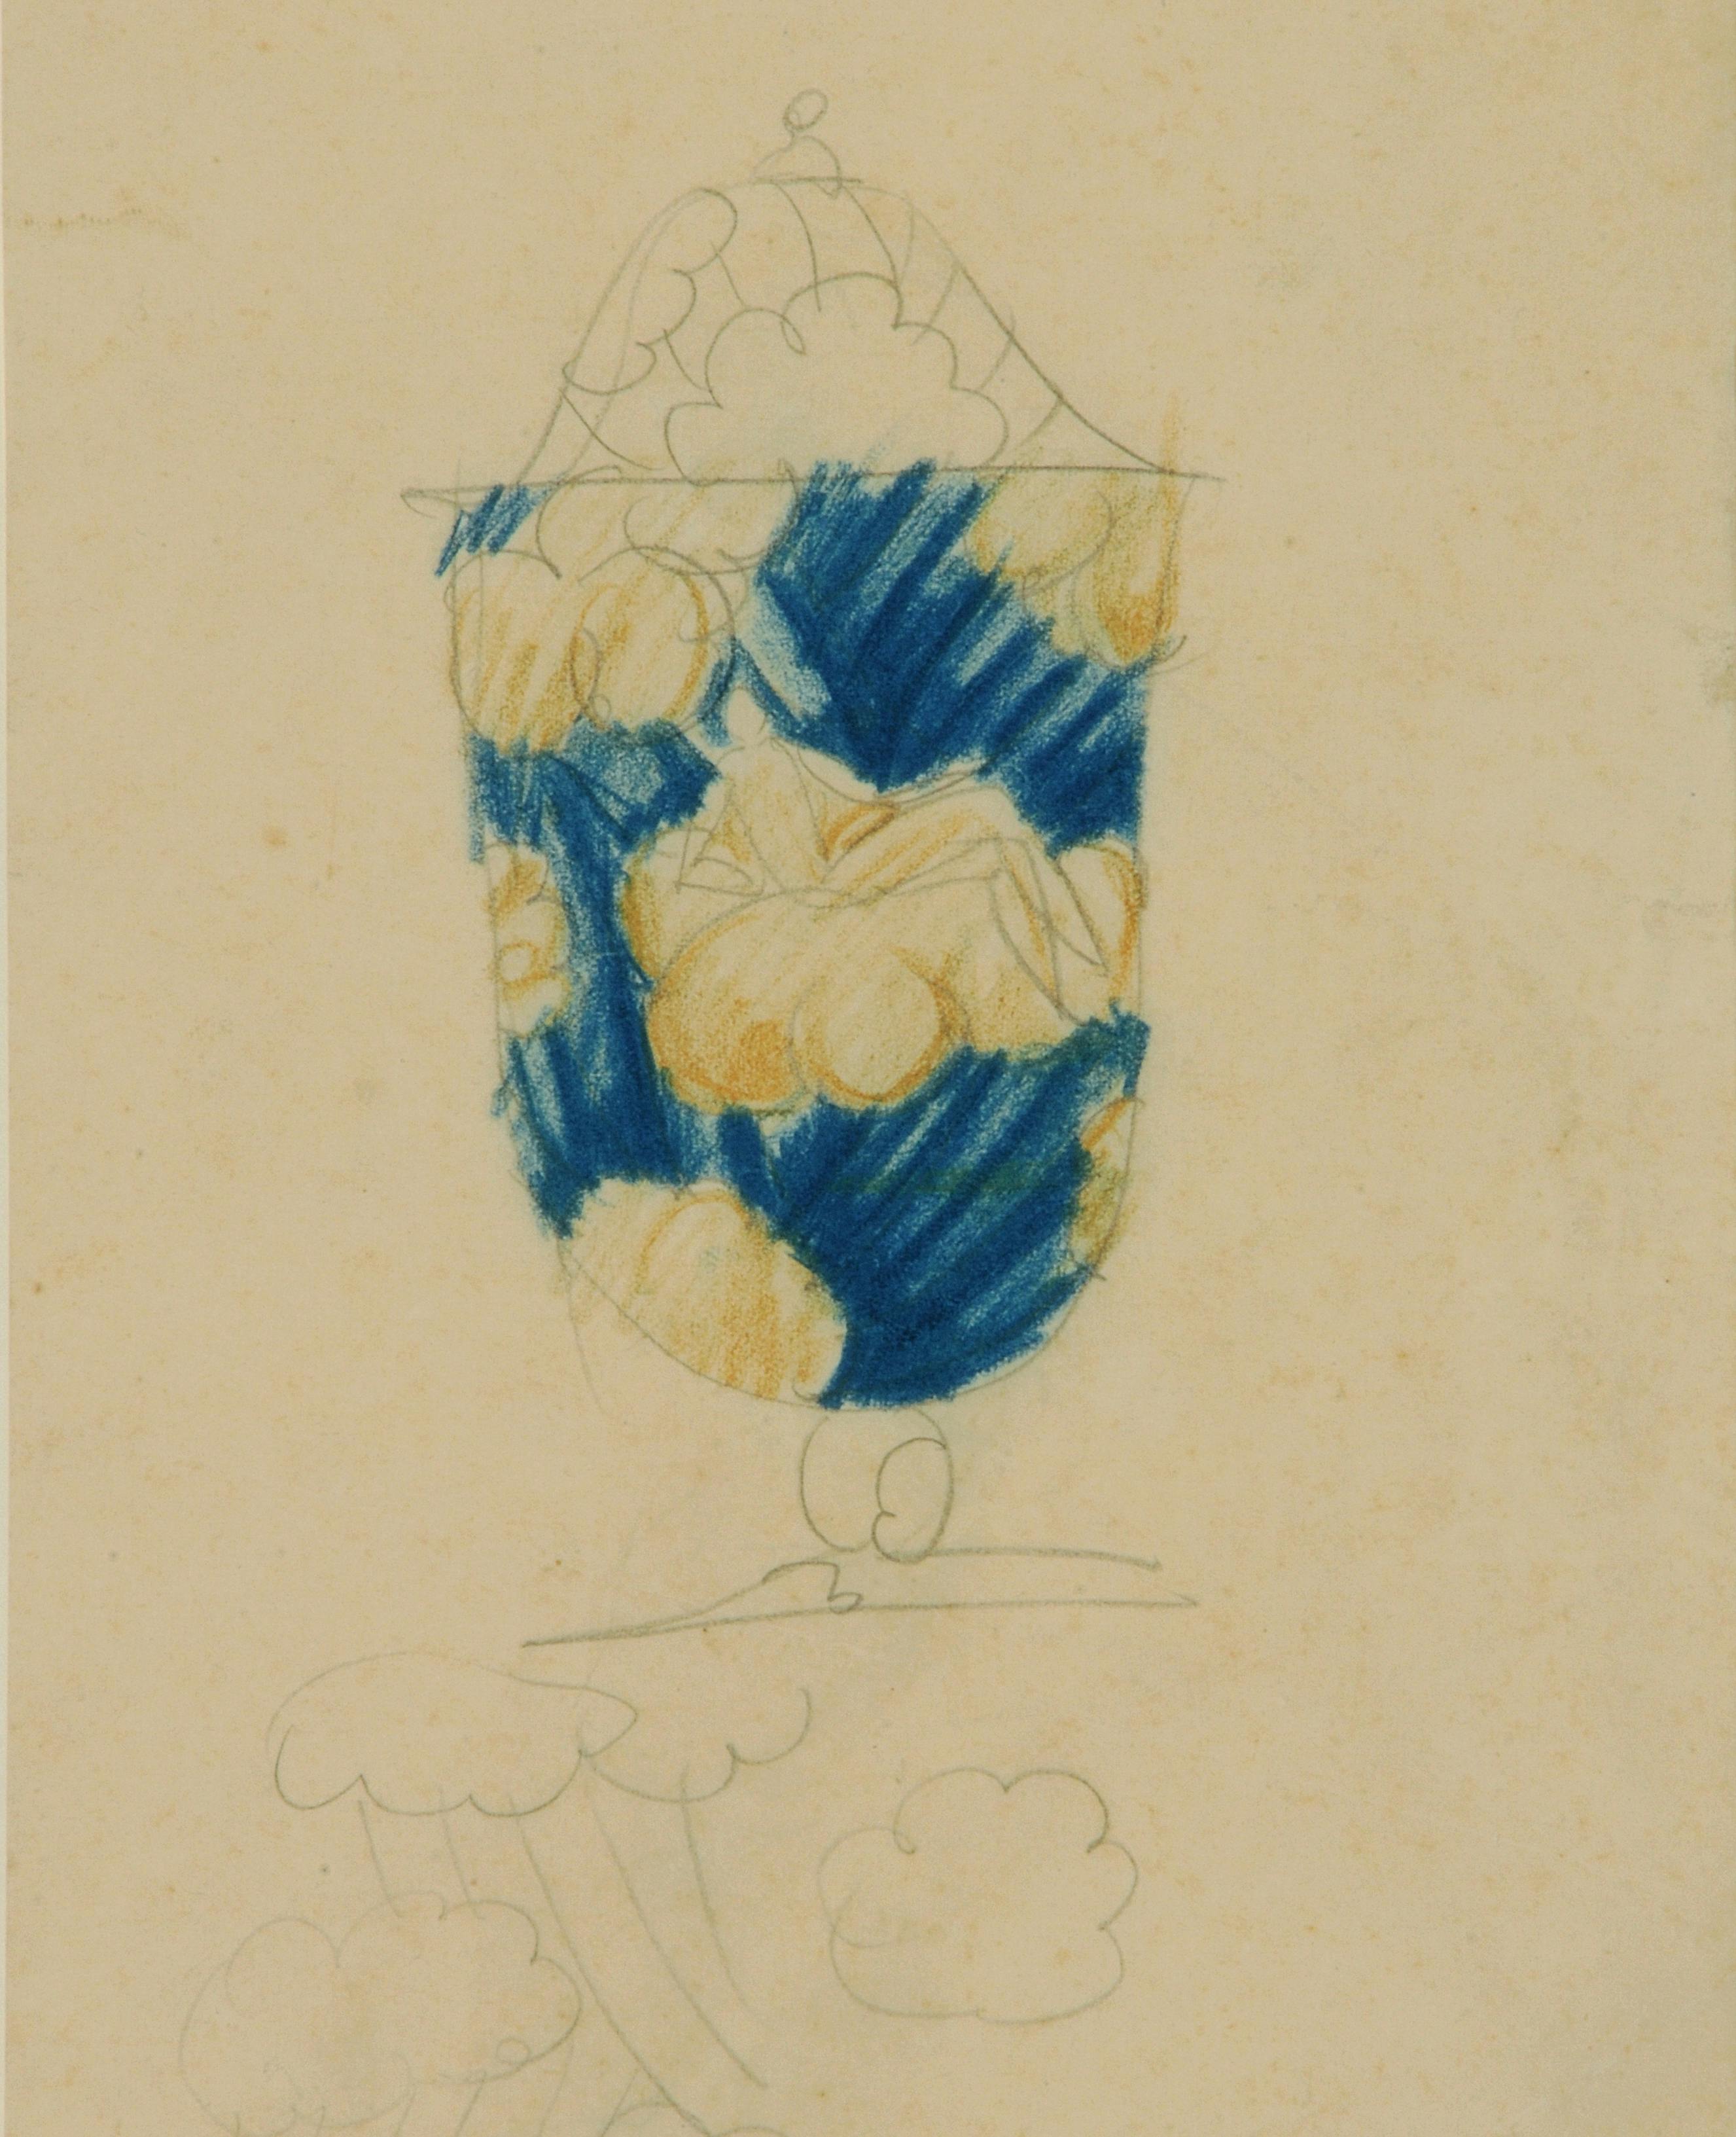 disegno a matita di vaso con decoro in blu e oro con figure di donne su nuvole